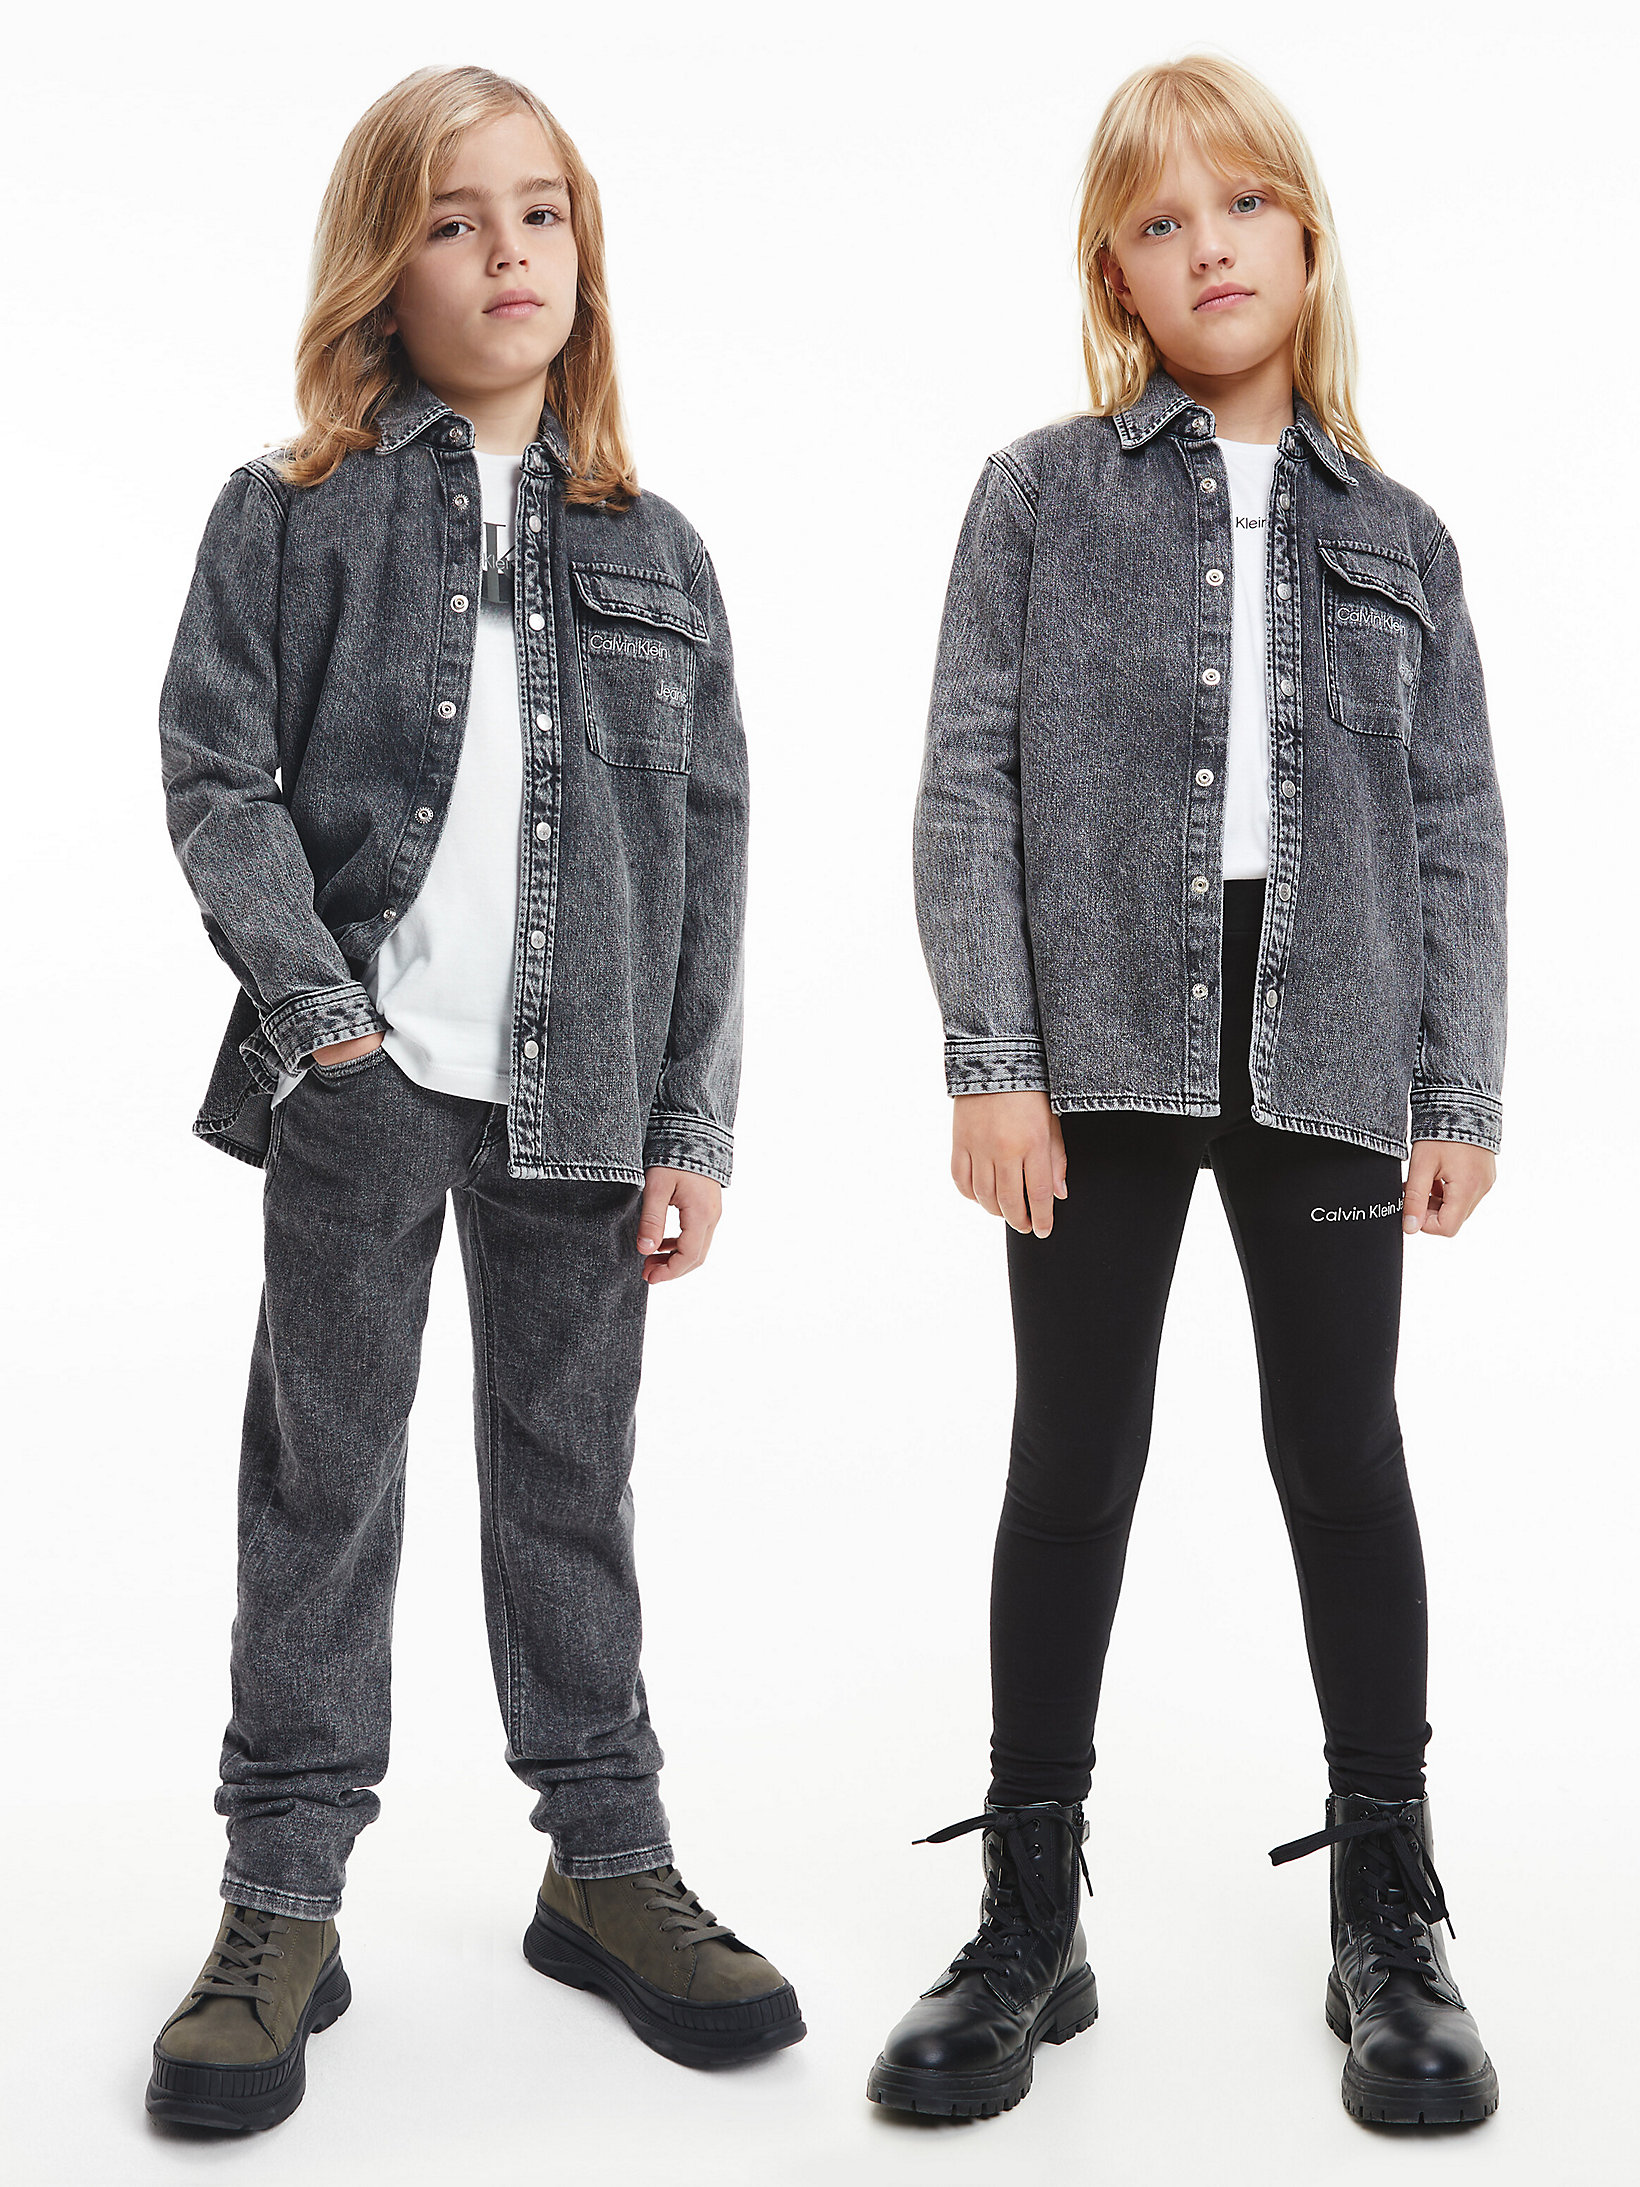 Stone Grey Wash Unisex Denim Overshirt undefined kids unisex Calvin Klein